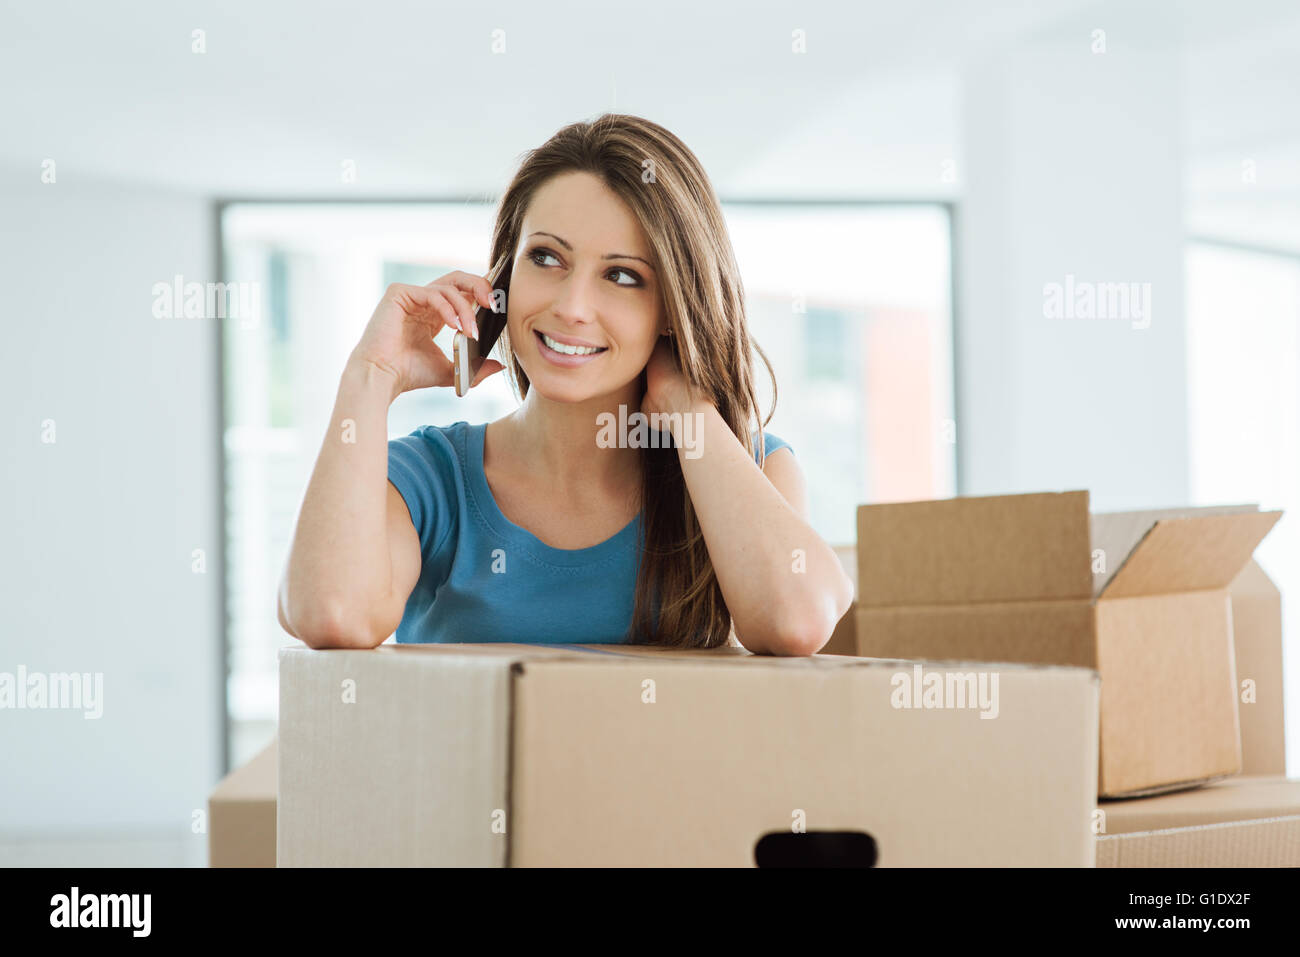 Schöne junge Frau mit einem Anruf in ihrem neuen Haus, sie lehnt sich auf einen Karton Stockfoto